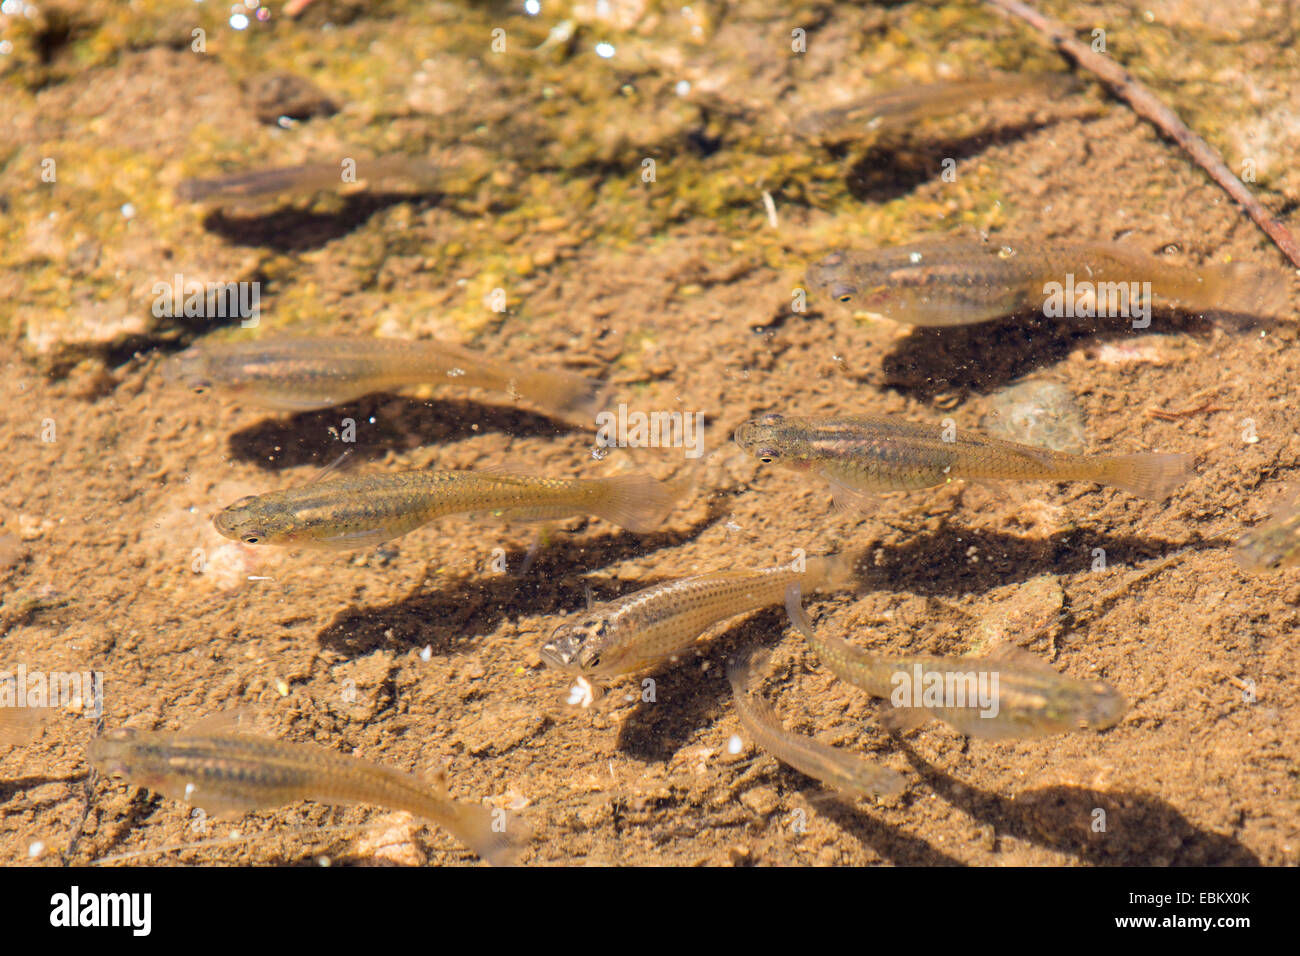 Pesce di zanzara, mosquitofish (Gambusia affinis), parecche femmine in acque poco profonde, USA, Arizona, sale sul fiume Phoenix Foto Stock